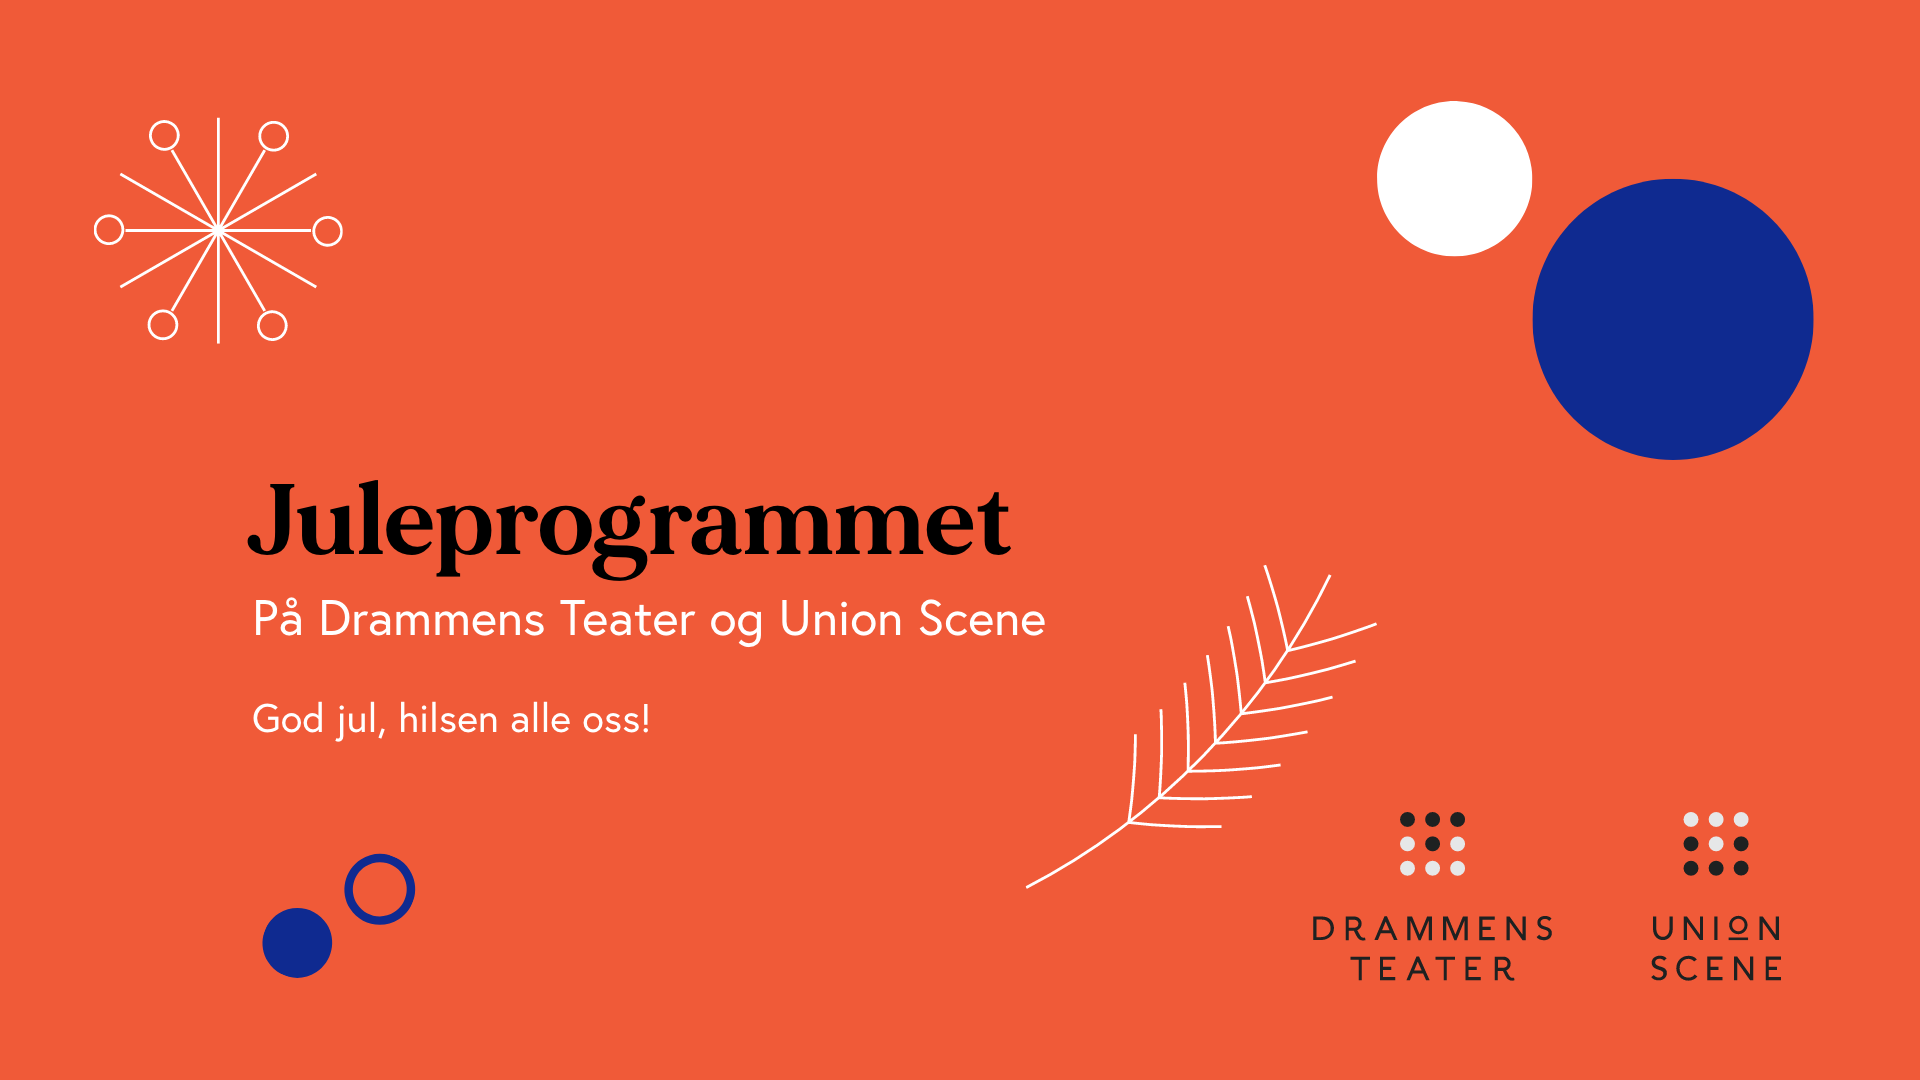 Se juleprogrammet for Union og Teatret